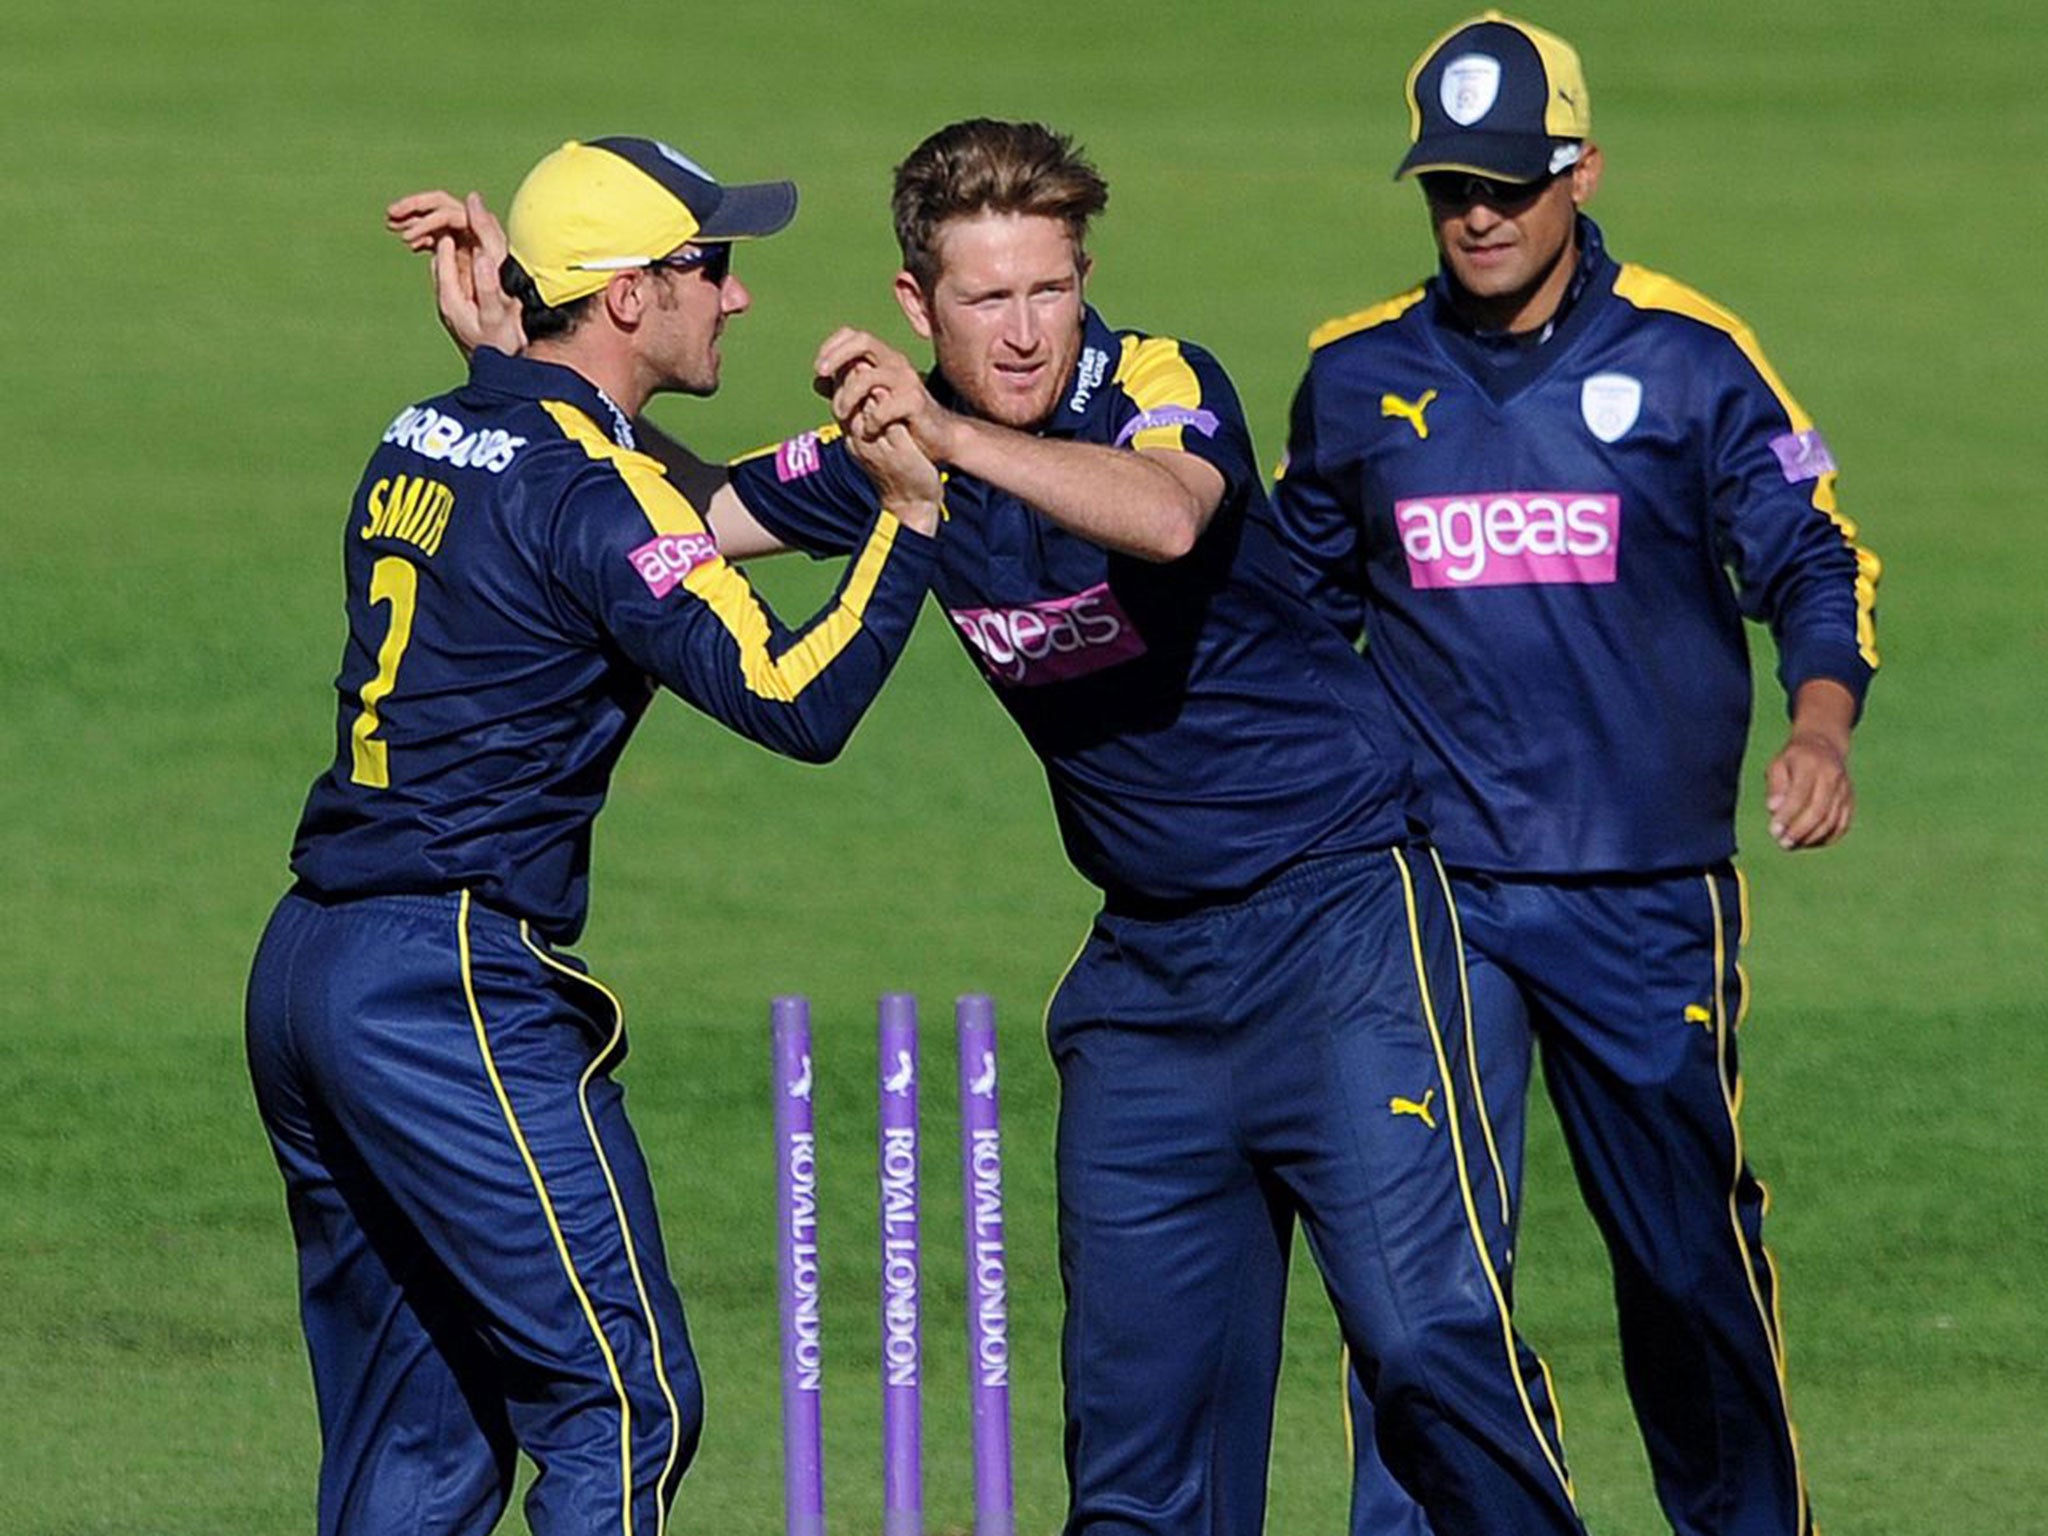 Liam Dawson (centre) celebrates taking a wicket for Hampshire